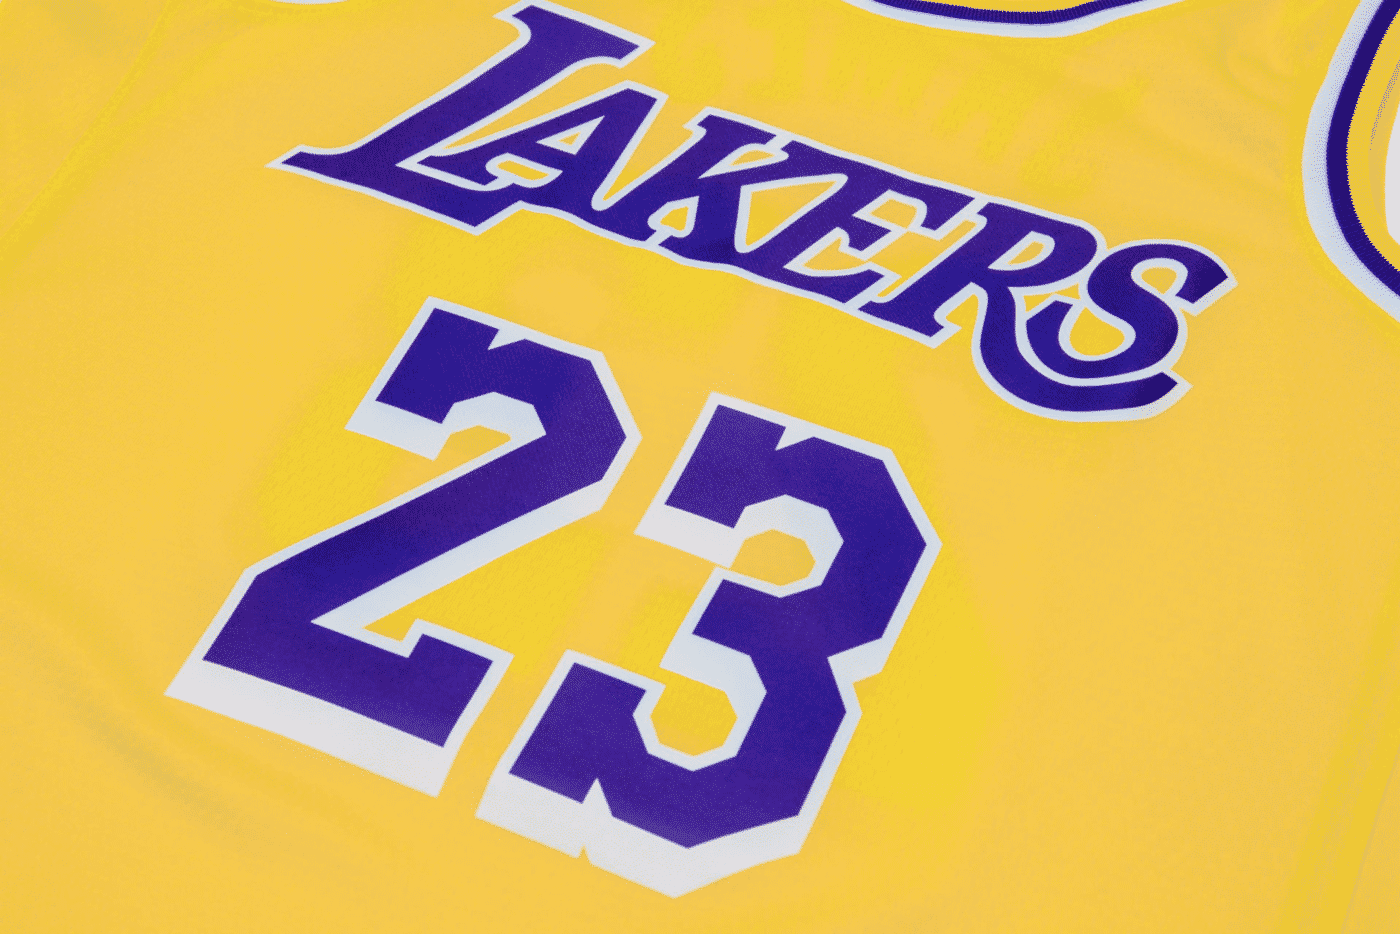 Le jersey de LeBron aux Lakers fuite encore, hommage au Showtime confirmé